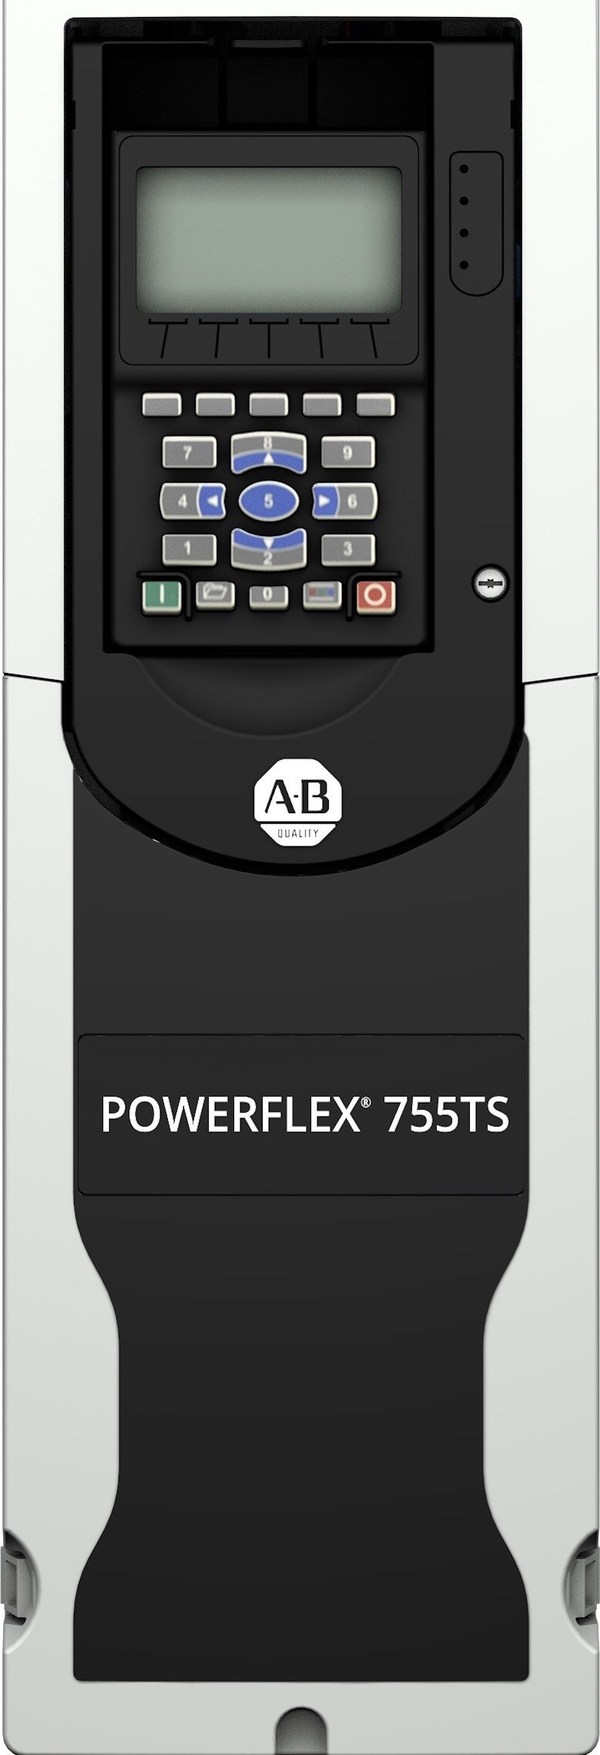 로크웰 오토메이션, PowerFlex 755TS 드라이브 출시